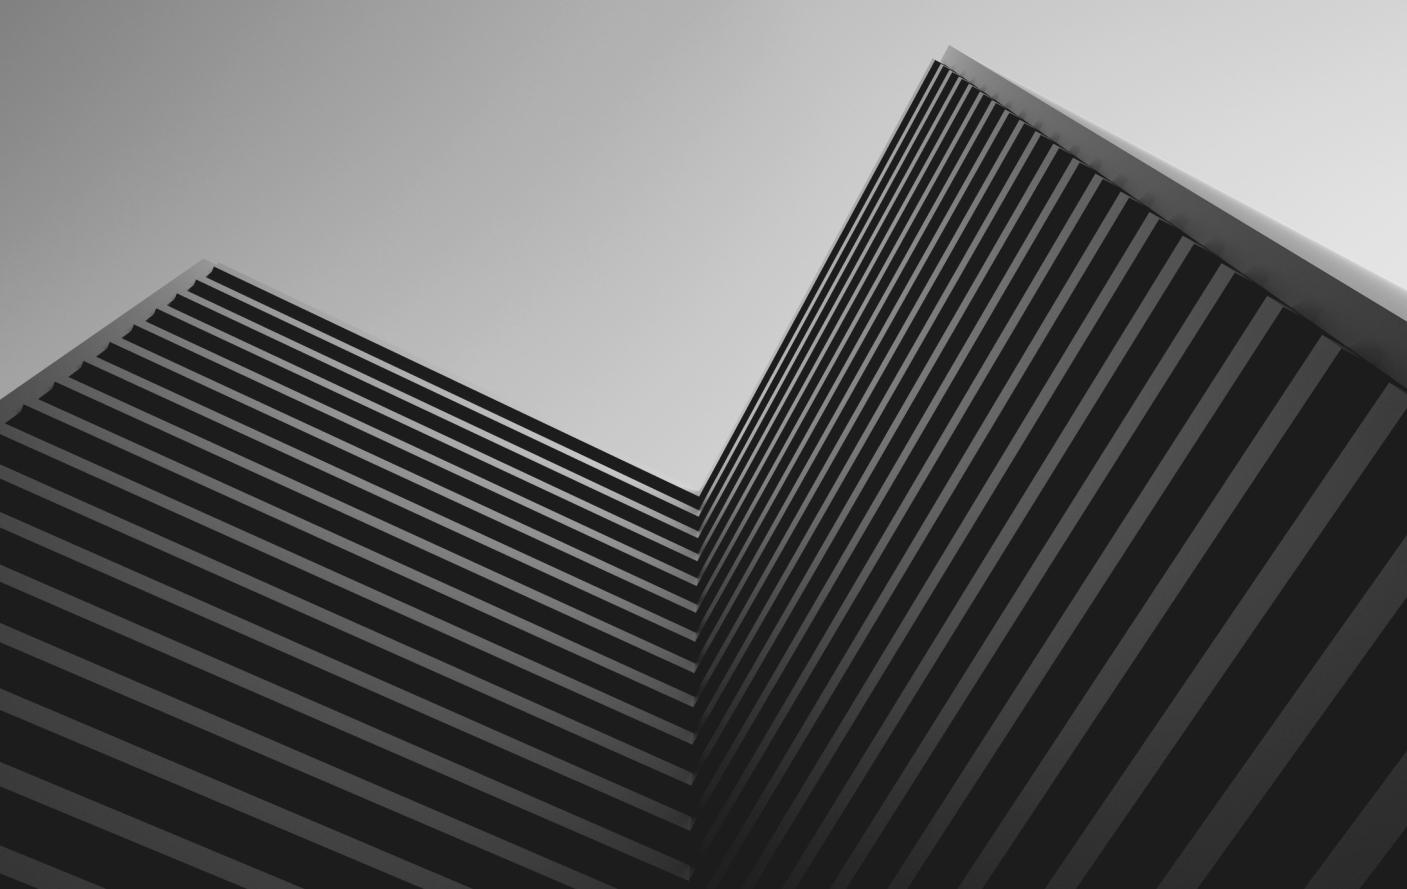 Fotografia artística contemporânea em preto e branco de um prédio visto de baixo pra cima